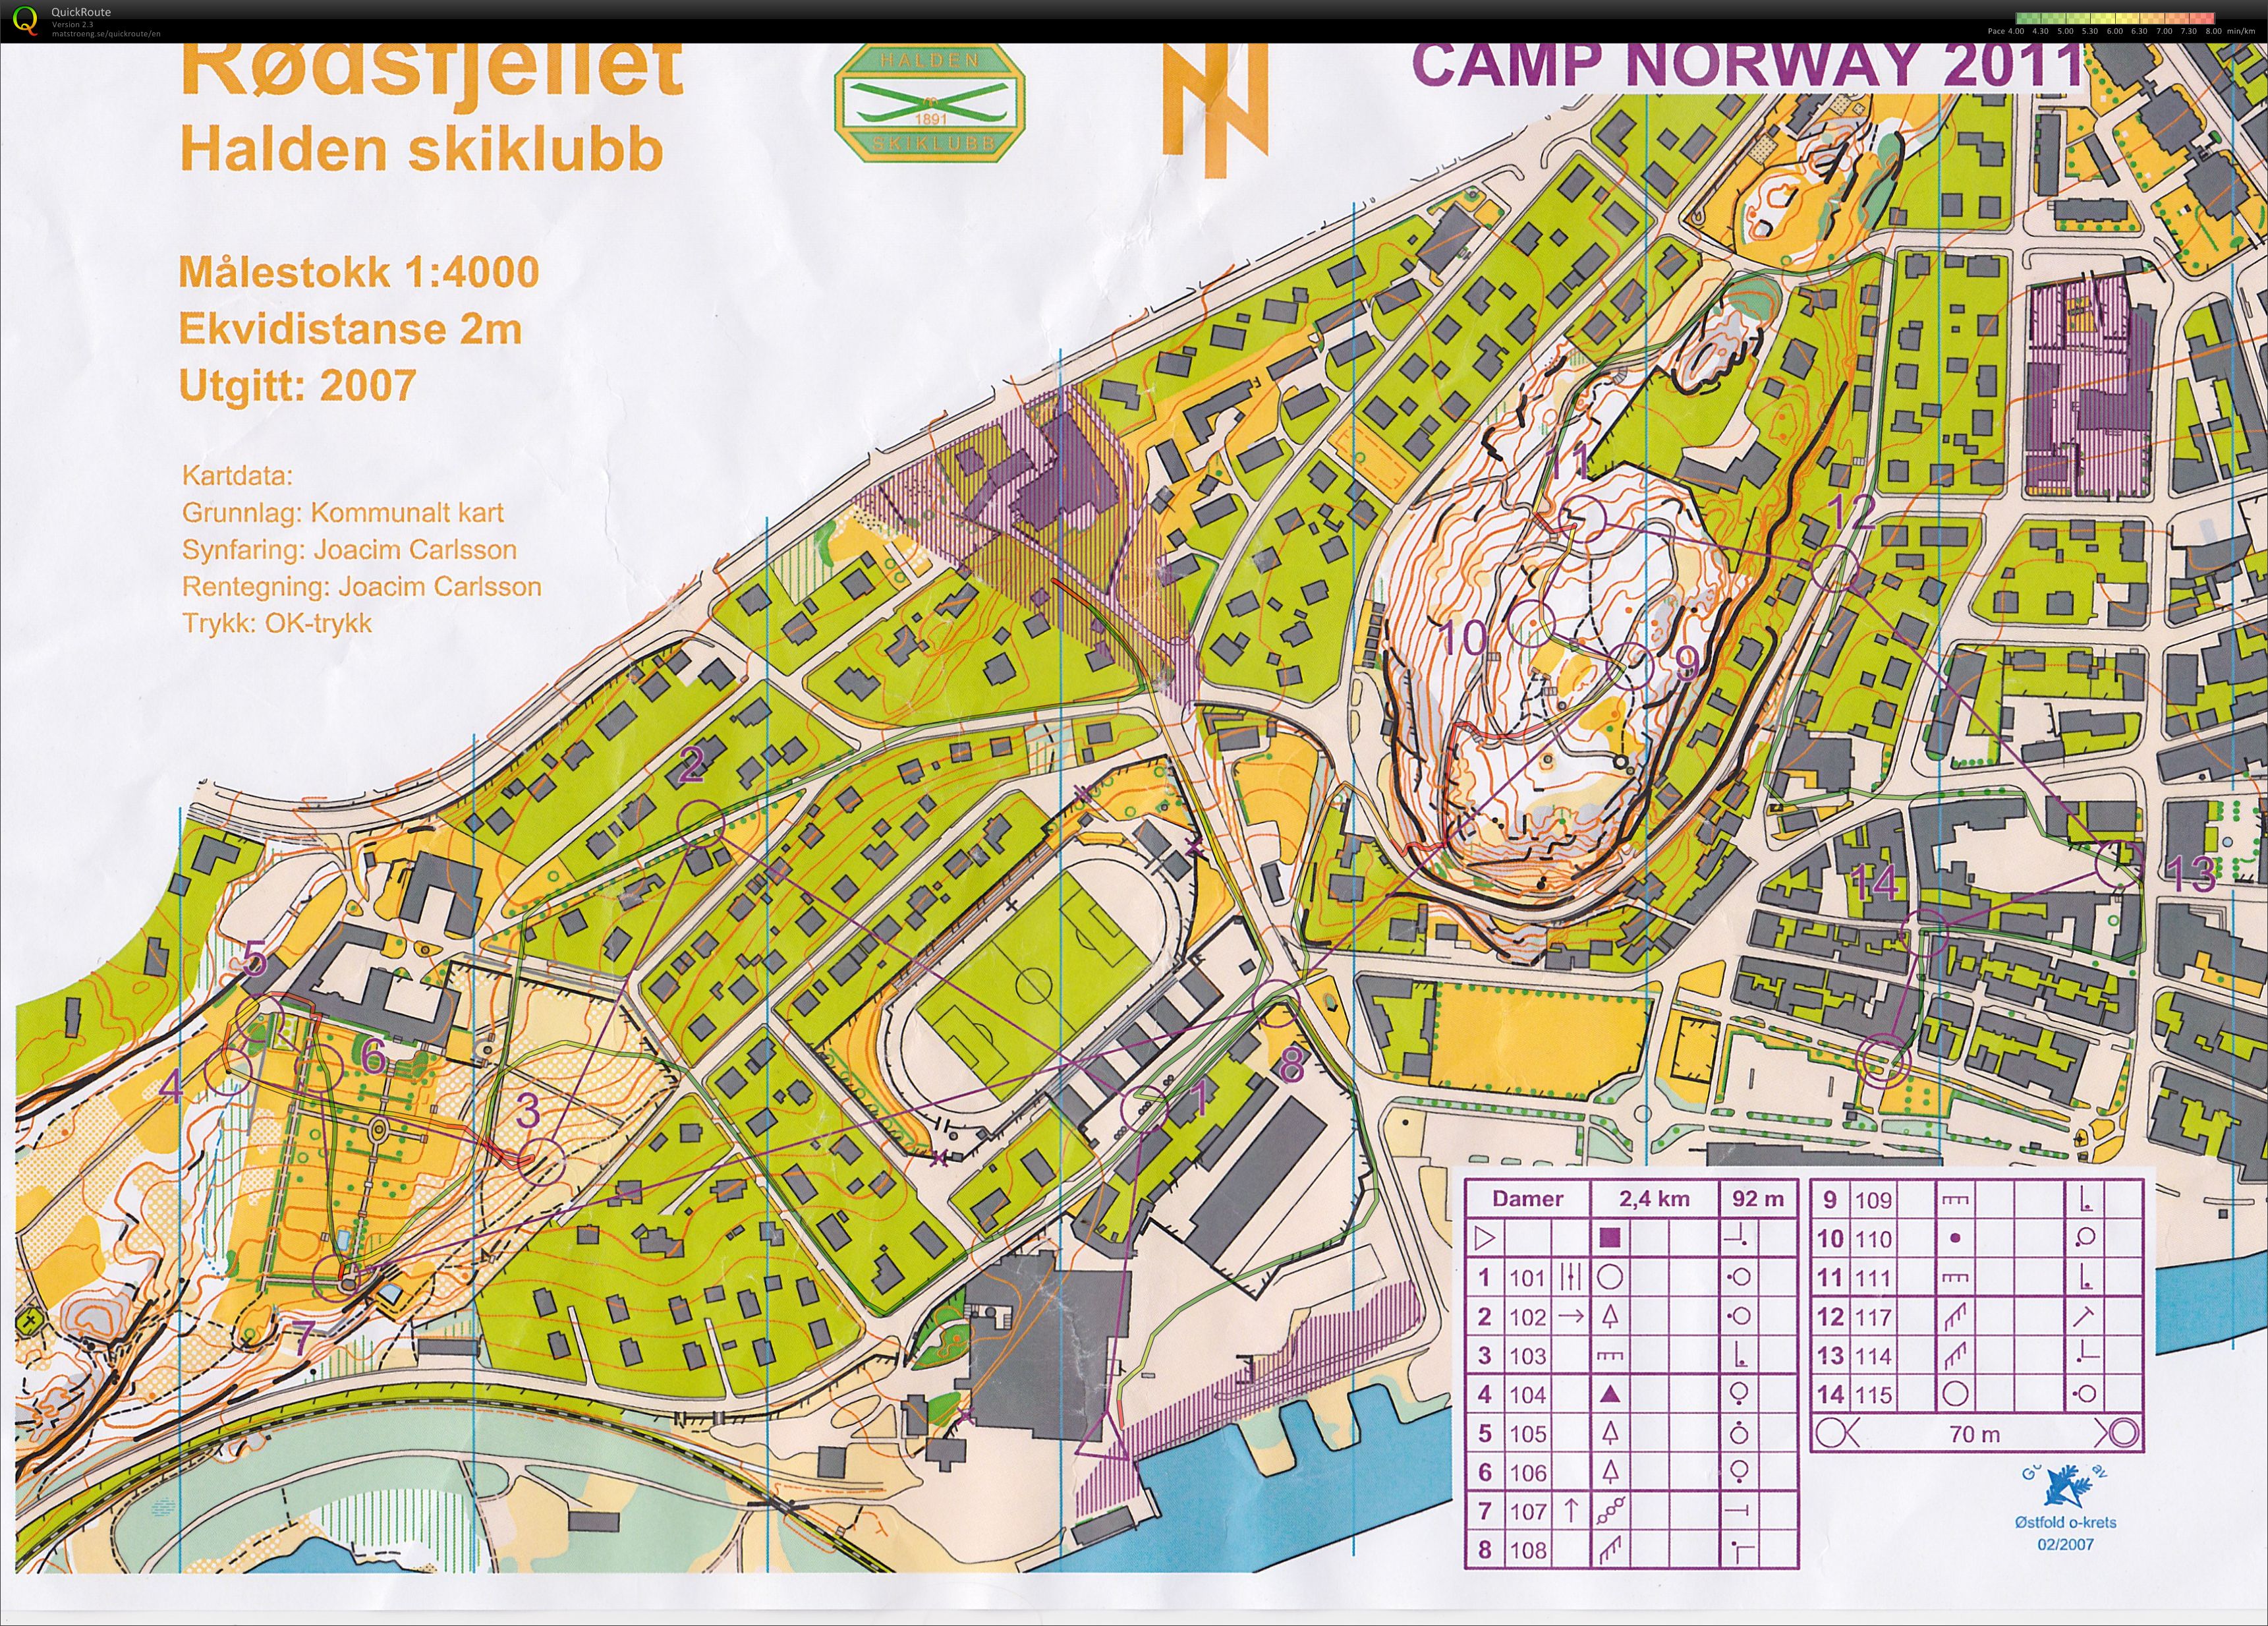 Camp Norway Halden økt 1, sprint (2011-11-03)